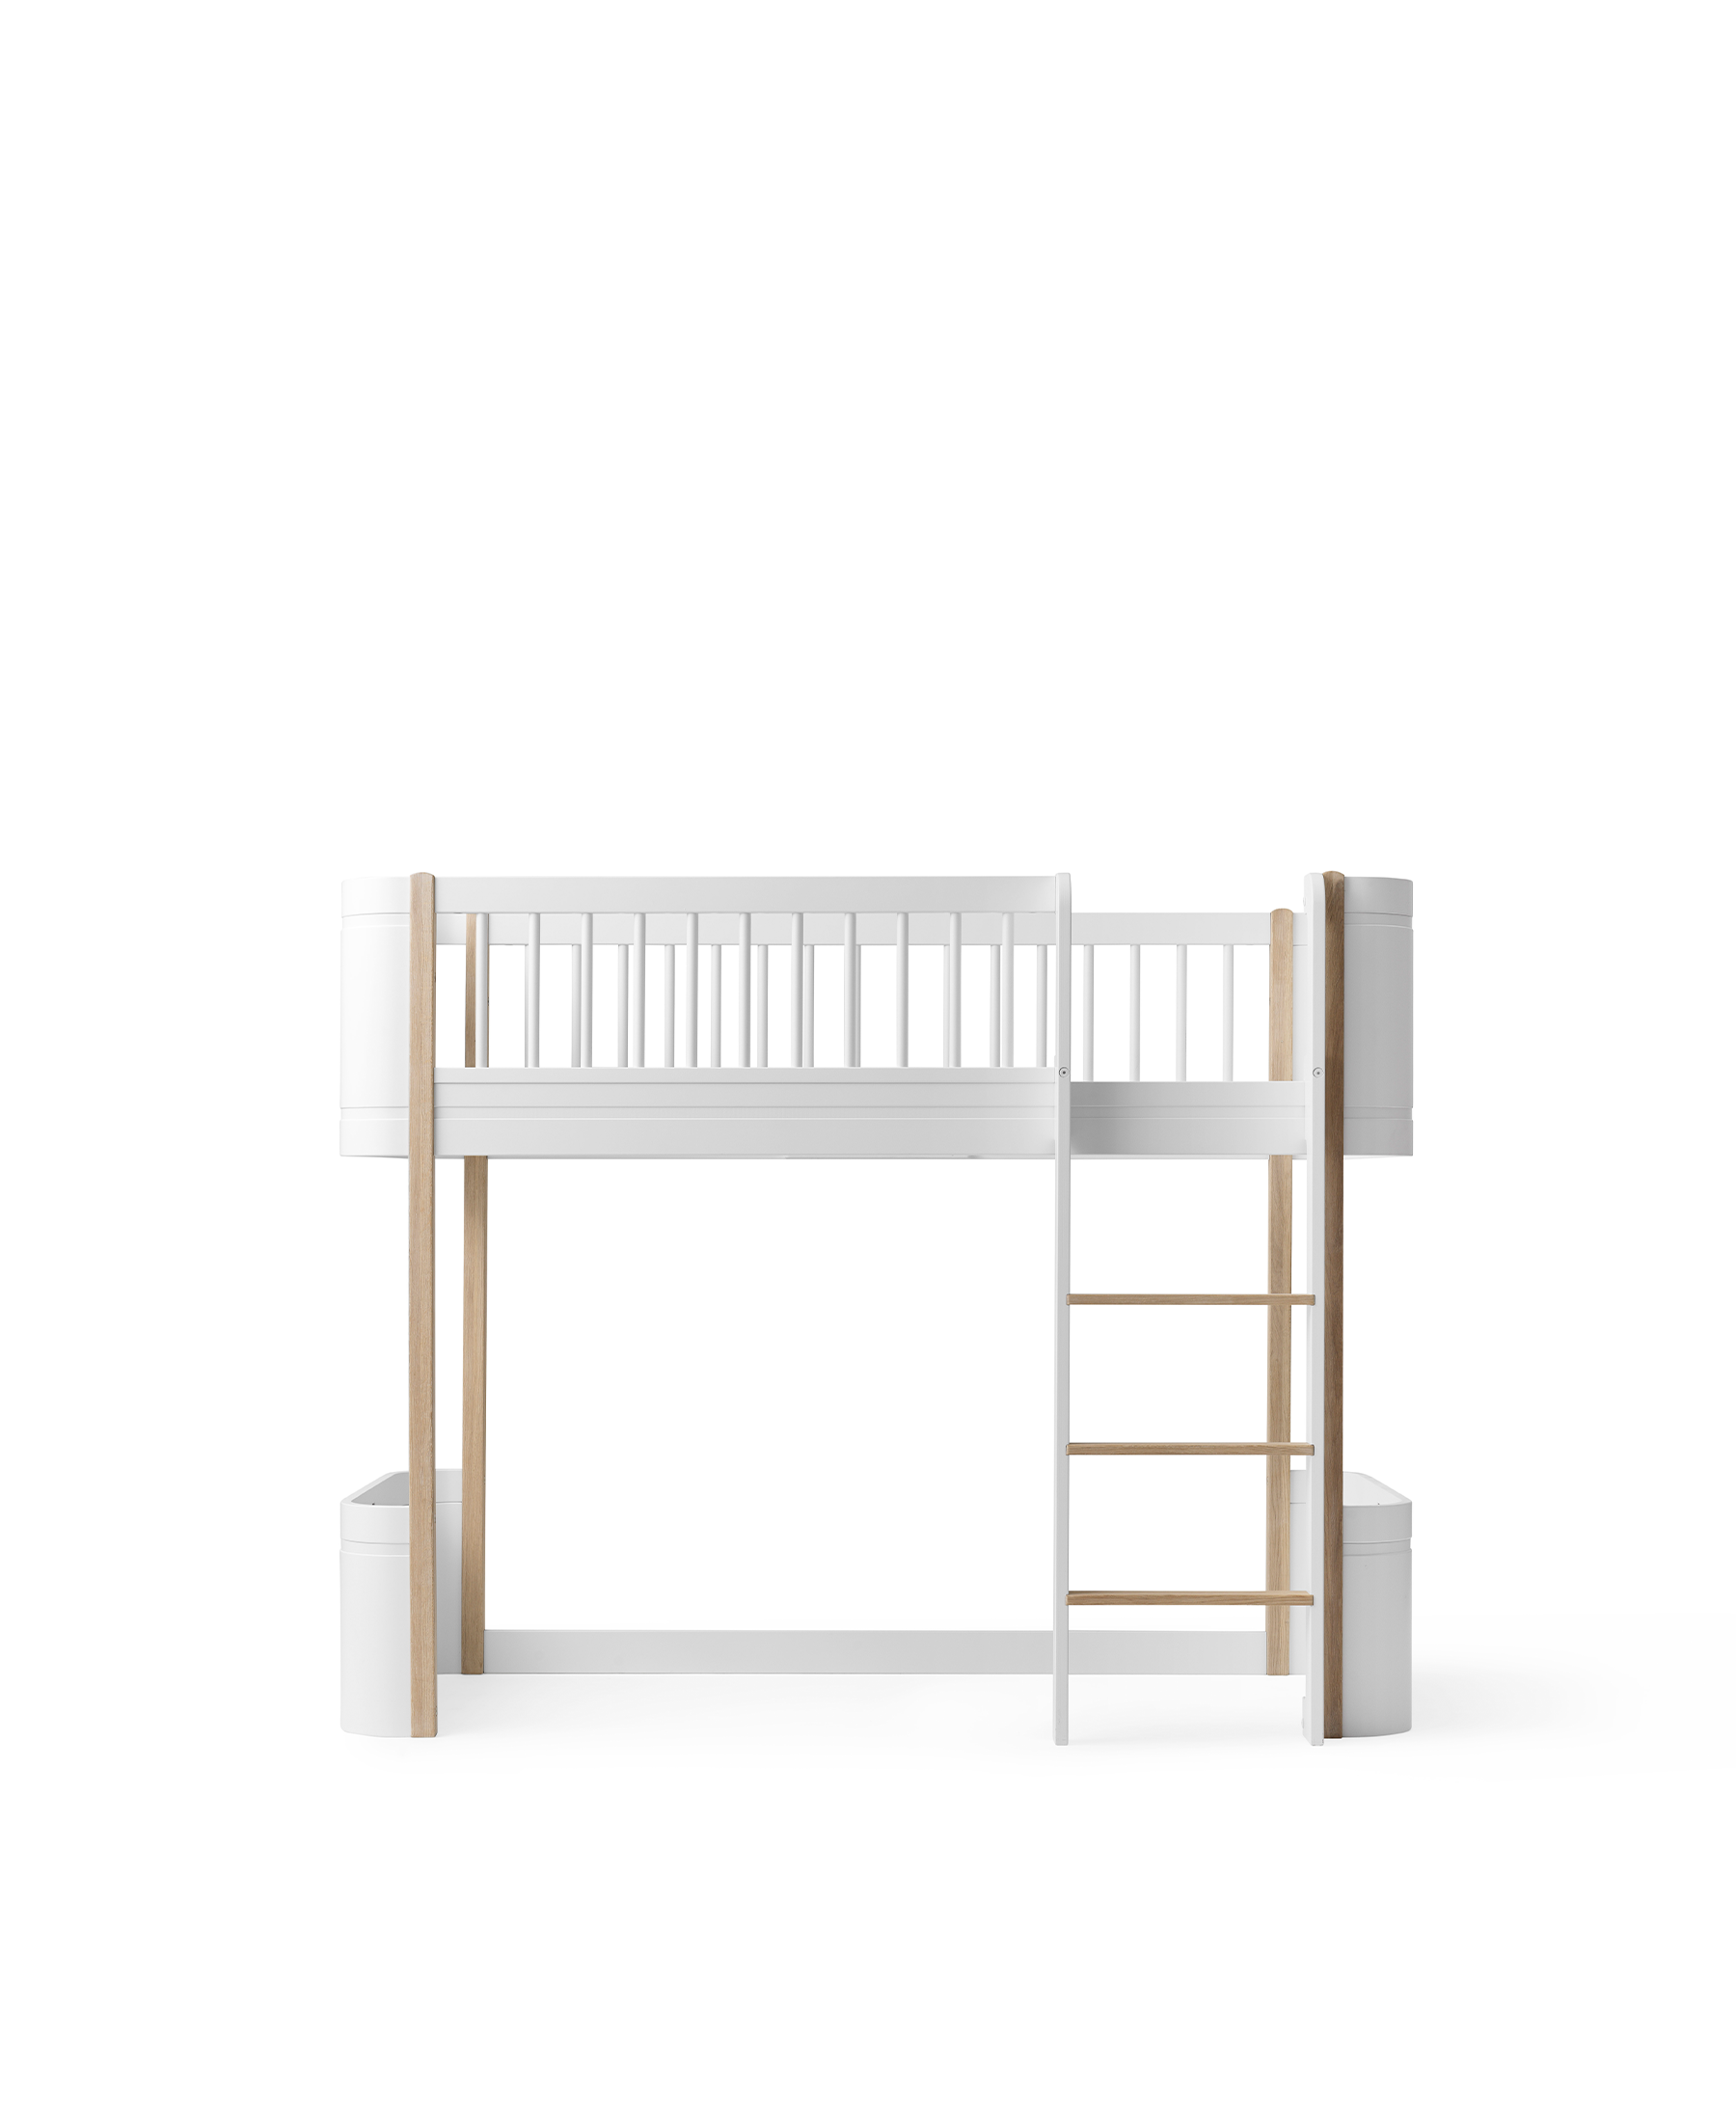 Hamaca balancín bebés Wood x Oliver Furniture. Hamacas infantiles